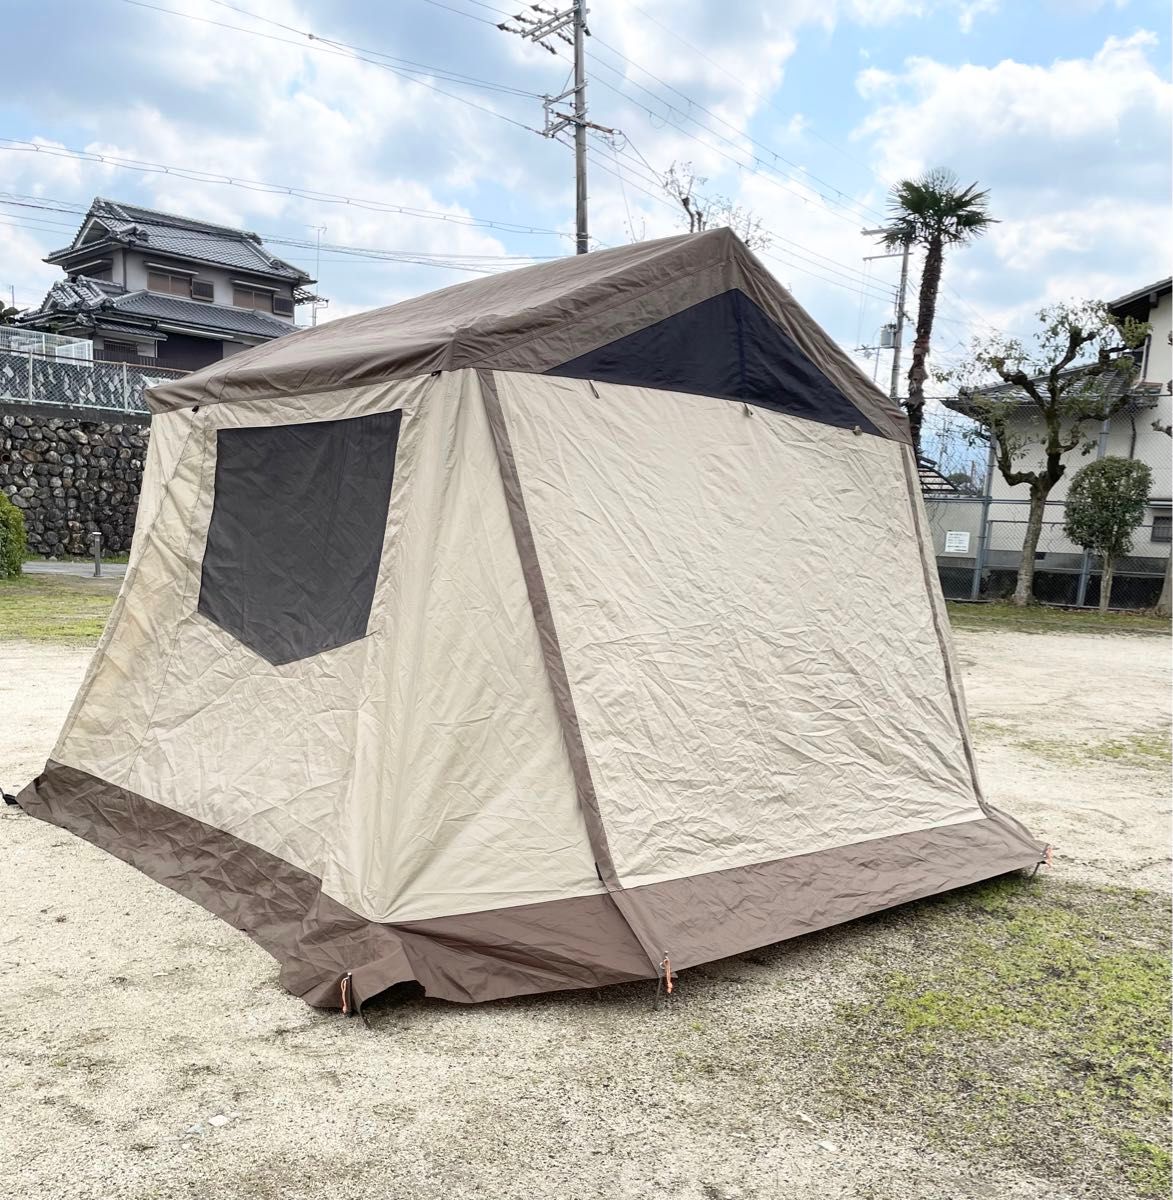 早い者勝ち 送料無料 オガワ オーナーロッジ タイプ52R PVCマルチシート付 キャンプ テント アウトドア